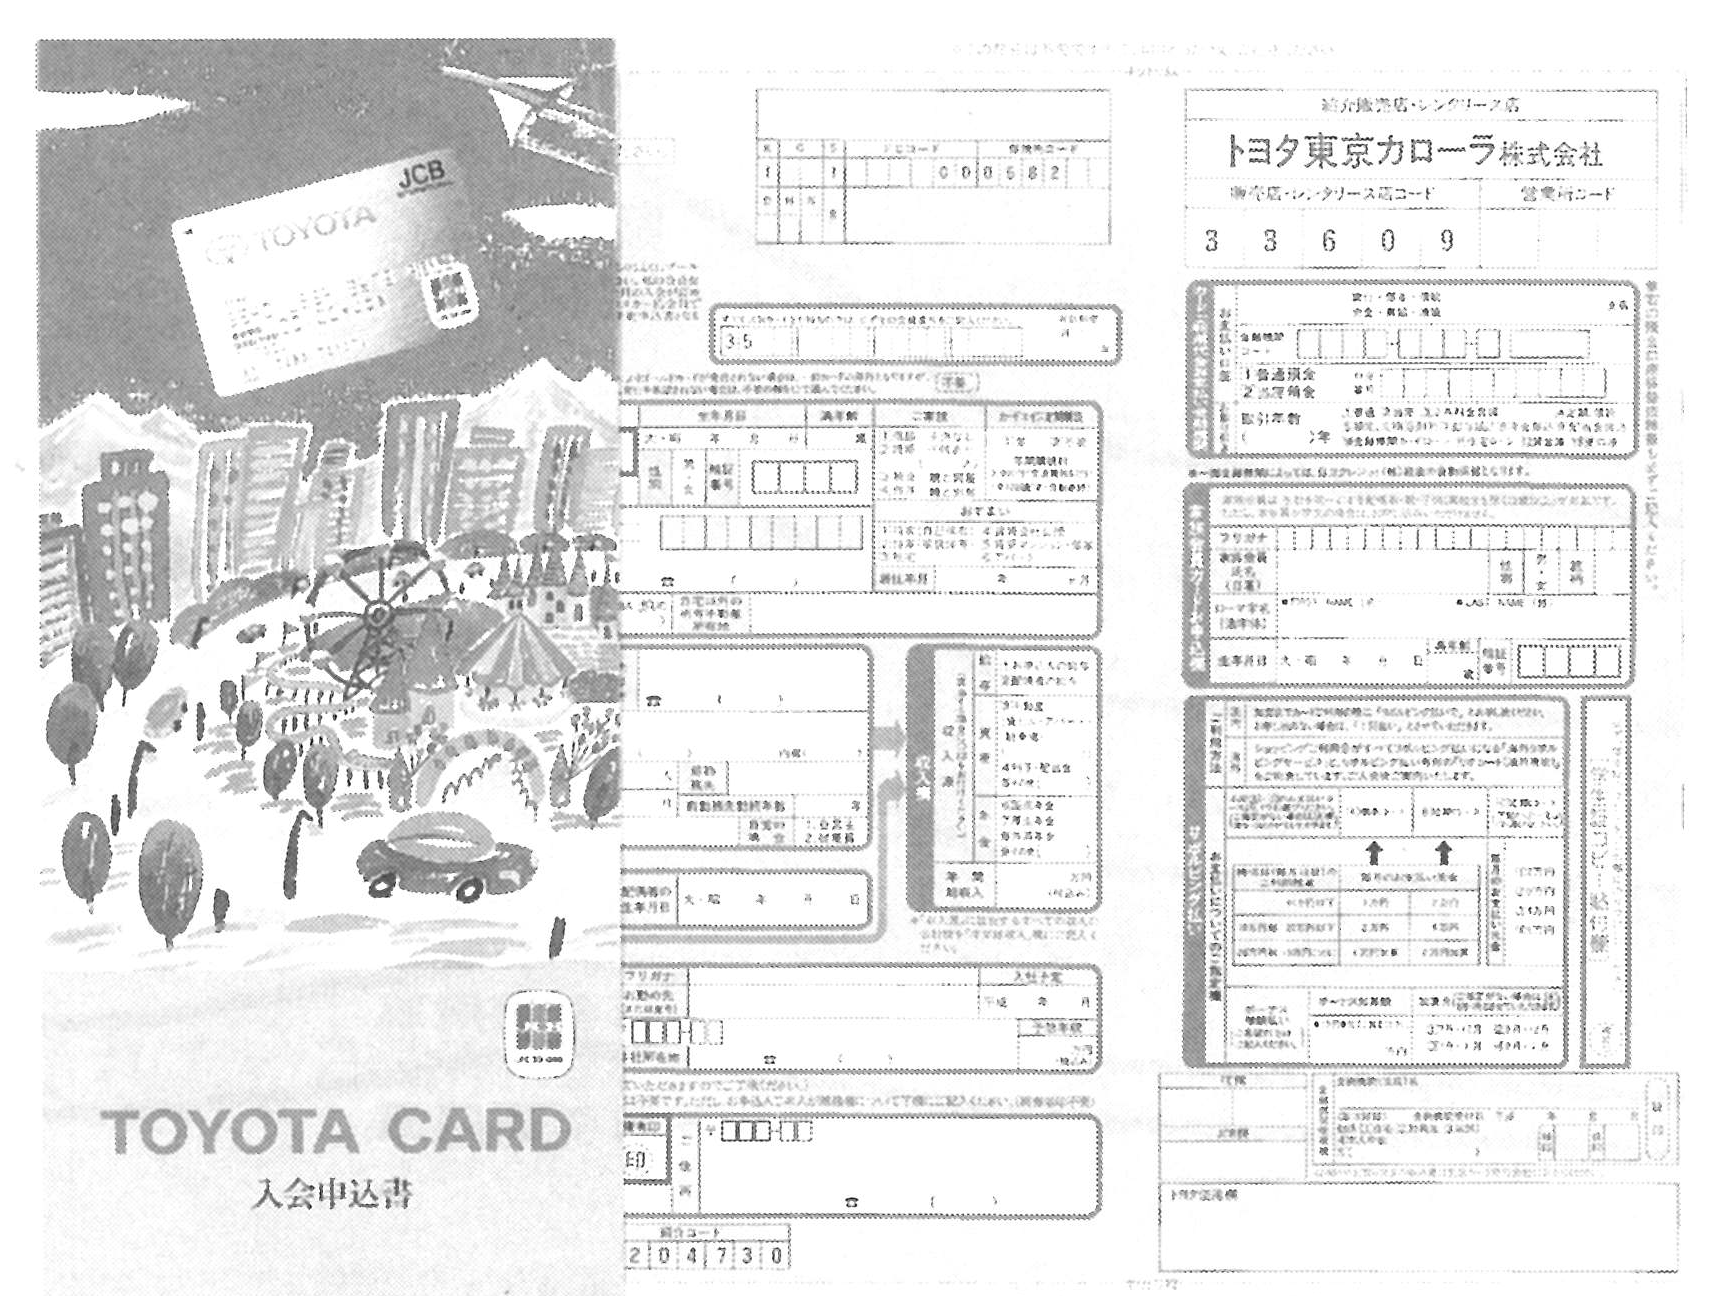 トヨタカードの入会申込書。本田技研工業（株）も同様のカードの発行を開始したことから、今後の動きが注目される